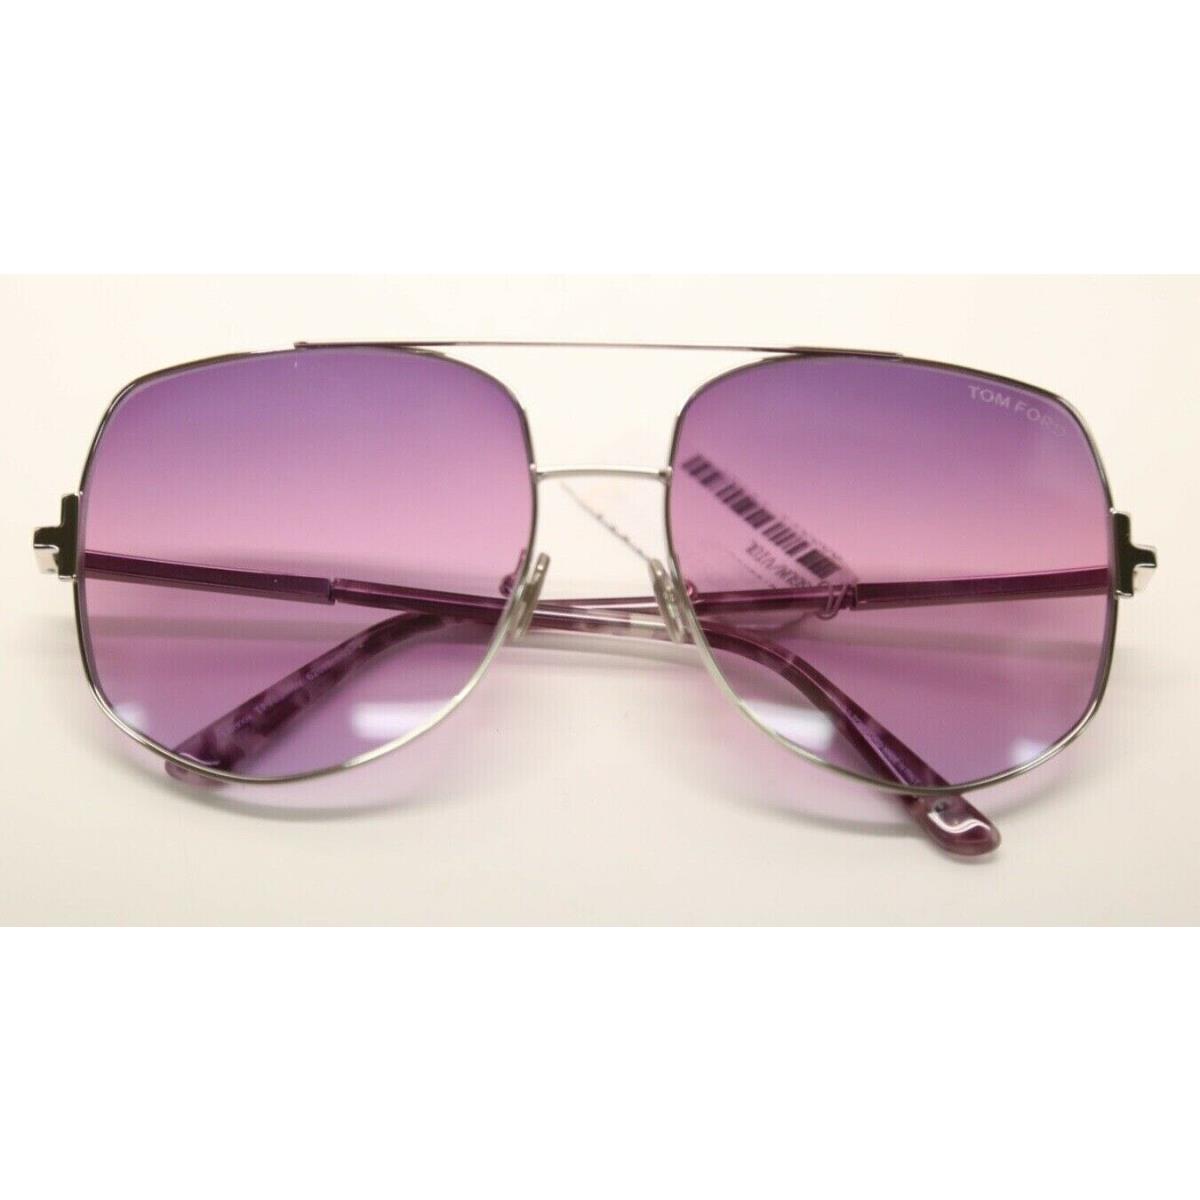 Tom Ford Lennox FT0783 TF783 16Y Shiny Palladium/violet Sunglasses 956 |  889214120724 - Tom Ford sunglasses lennox - Shiny Palladium Frame, Violet  Lens | Fash Direct